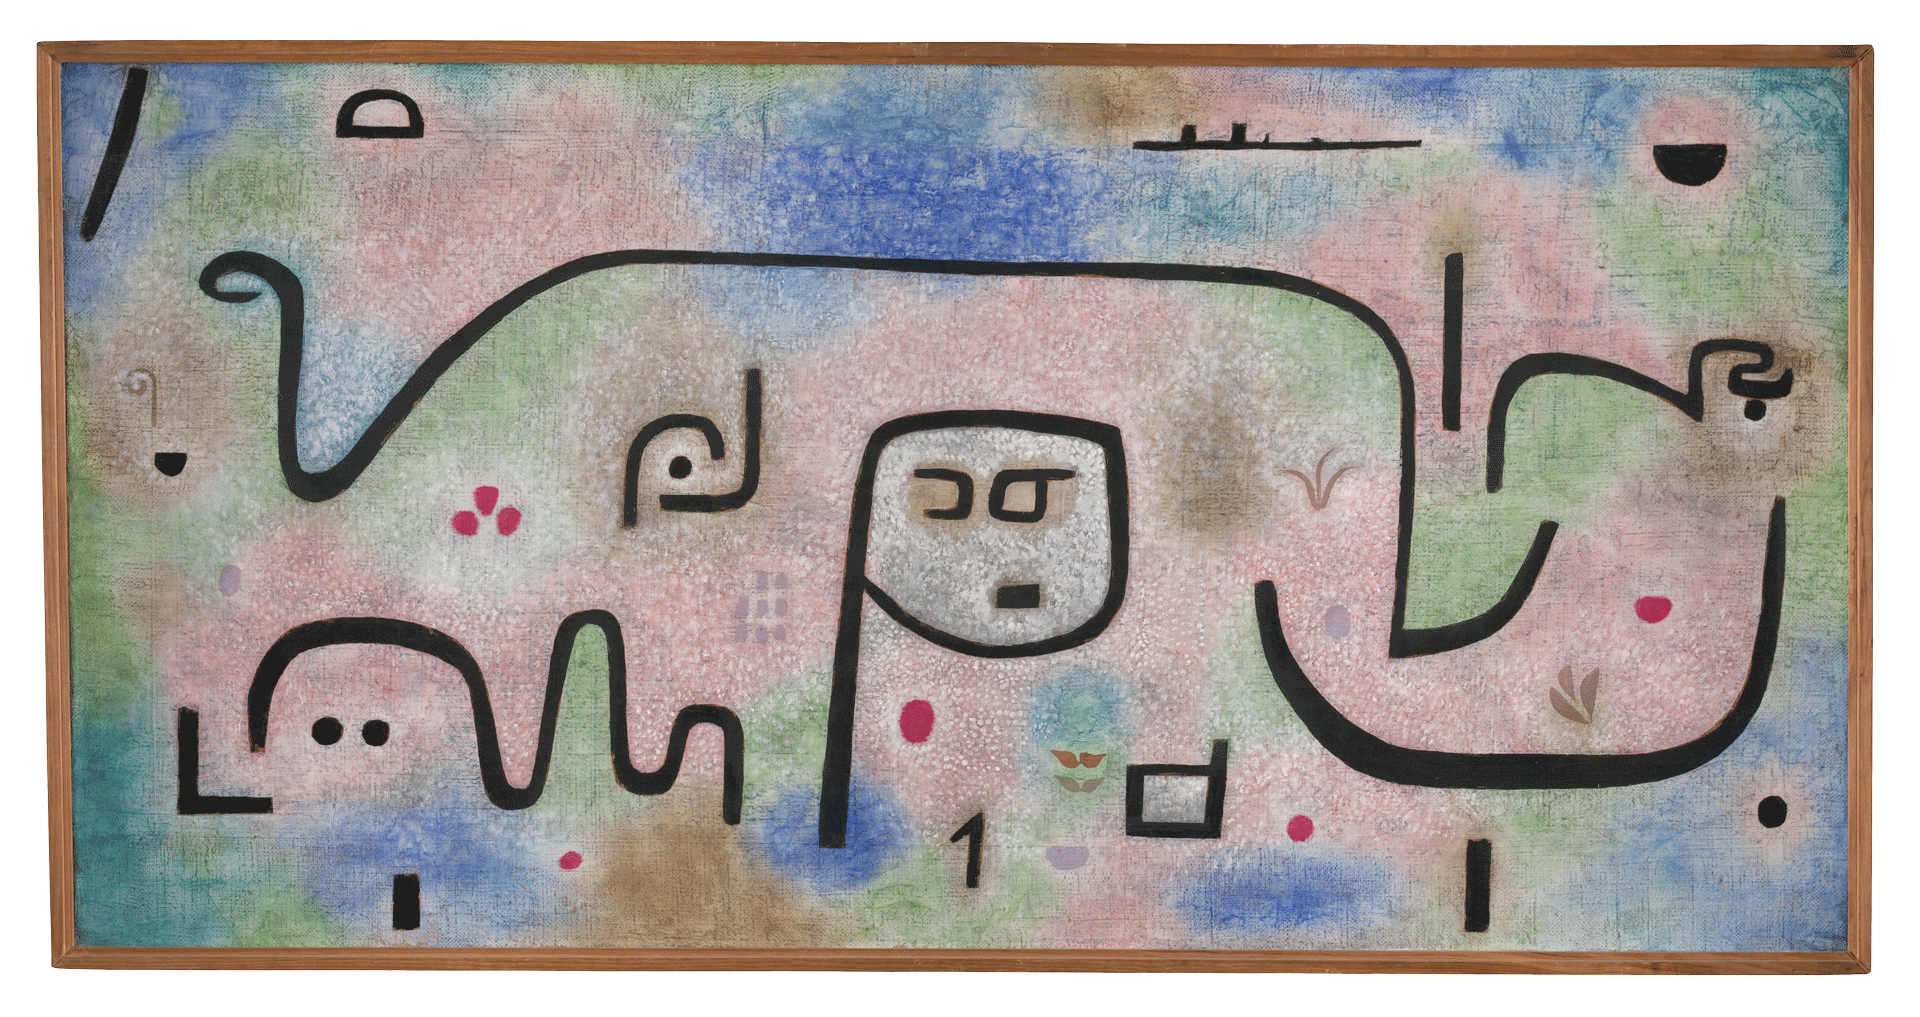 A media work on burlap in original frame by Paul Klee, titled Insula dulcamara, 1938, 481 ‚ÄãInsula Dulcamara, 1938, 481, dated 1938.